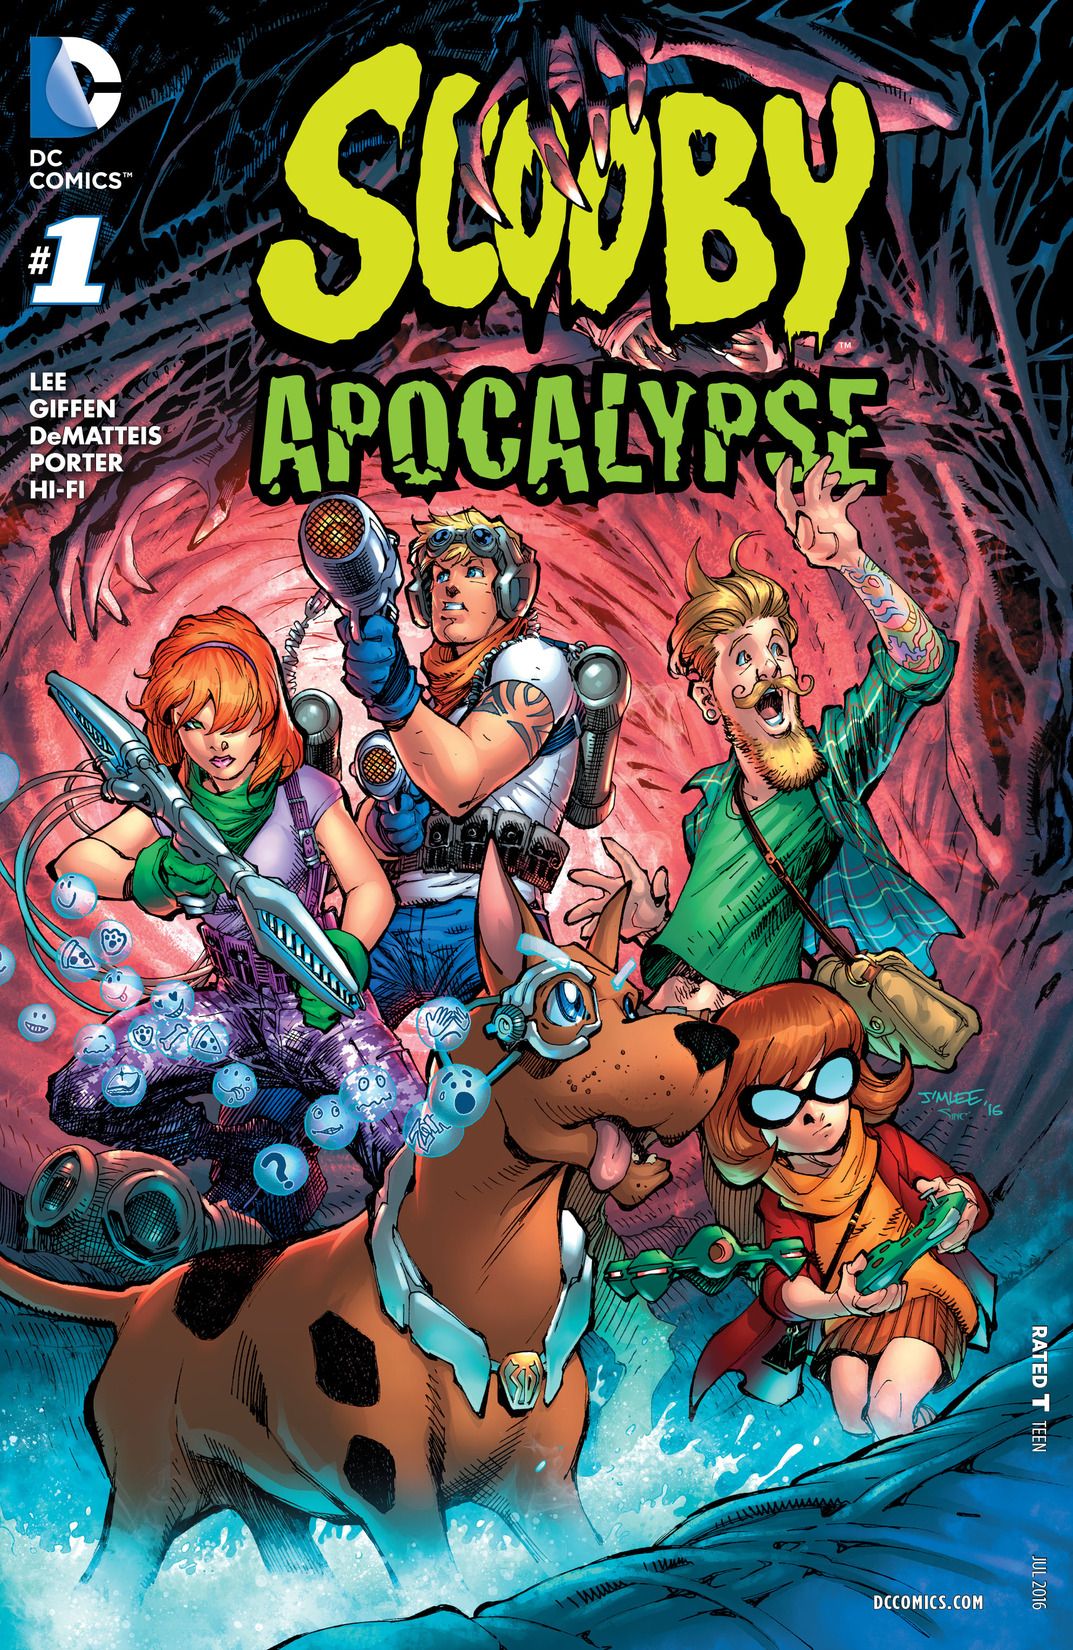 Scooby Apocalypse Vol. 1 | Kieth Giffen